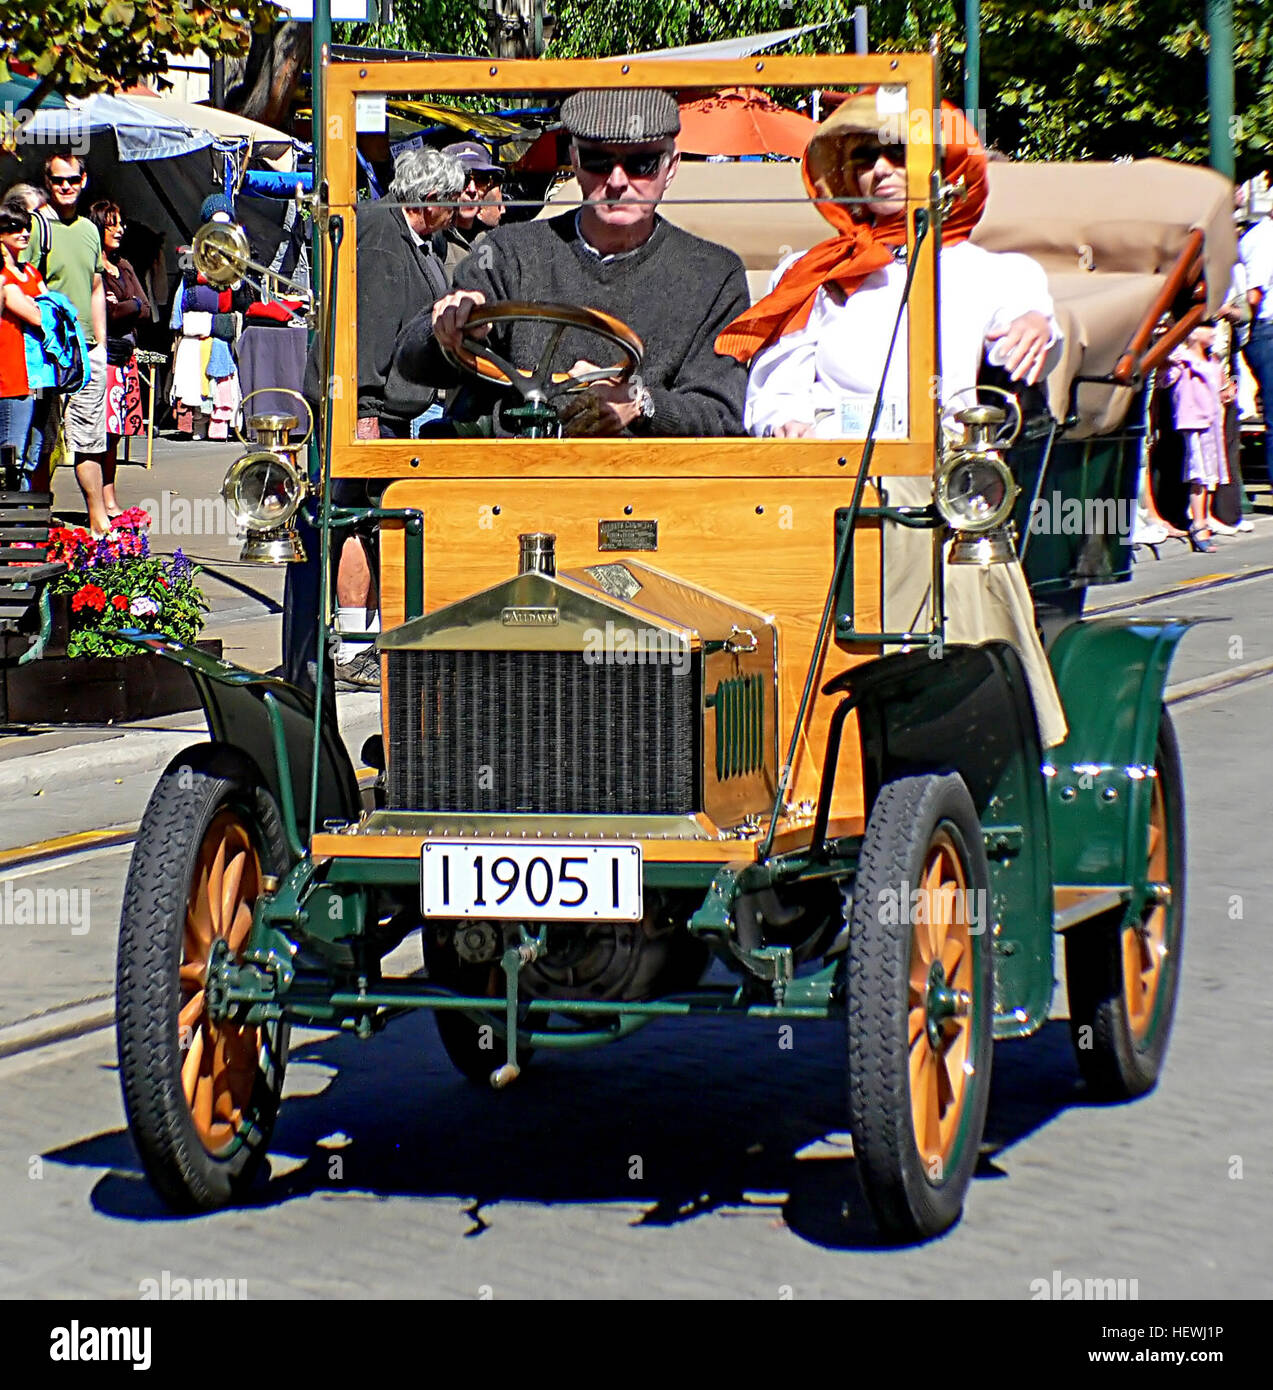 Tanken &amp; Zwiebeln war ein englischer Automobilhersteller, es produziert Autos von 1898 bis 1918. Die Autos wurden unter dem Namen Alltagsperspektiven verkauft. Die Firma baute auch eine frühe britische gebaute Traktor, Alltagsperspektiven allgemeine Zweck Traktor. Stockfoto